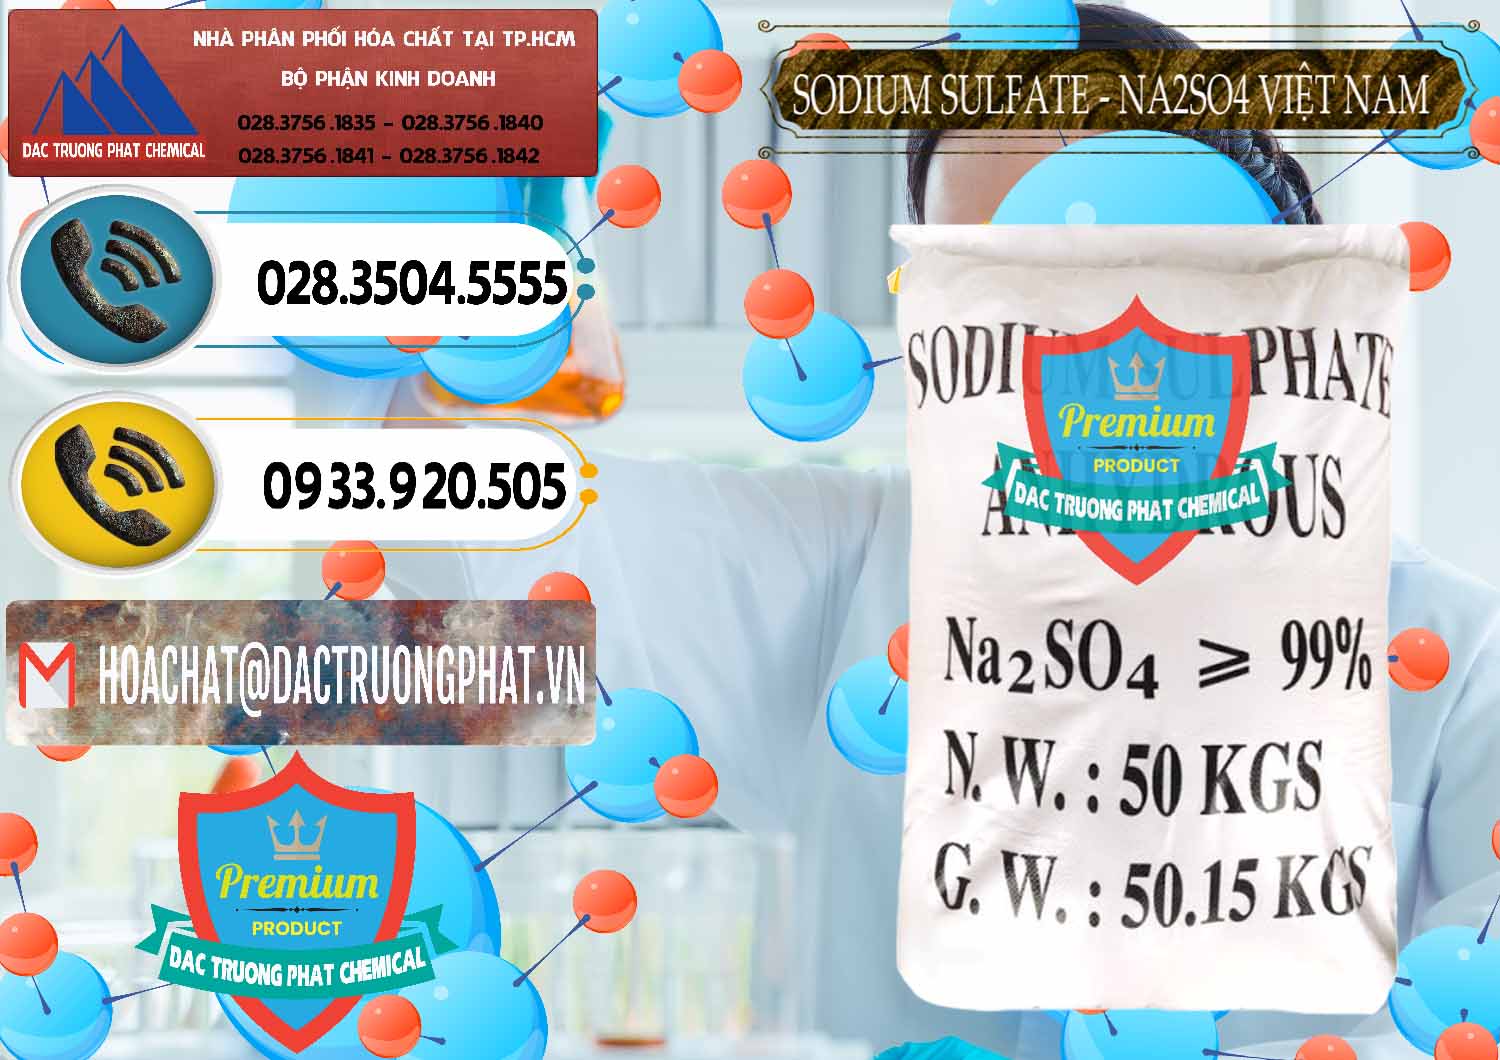 Chuyên bán và cung ứng Sodium Sulphate - Muối Sunfat Na2SO4 Việt Nam - 0355 - Công ty kinh doanh _ cung cấp hóa chất tại TP.HCM - hoachatdetnhuom.vn